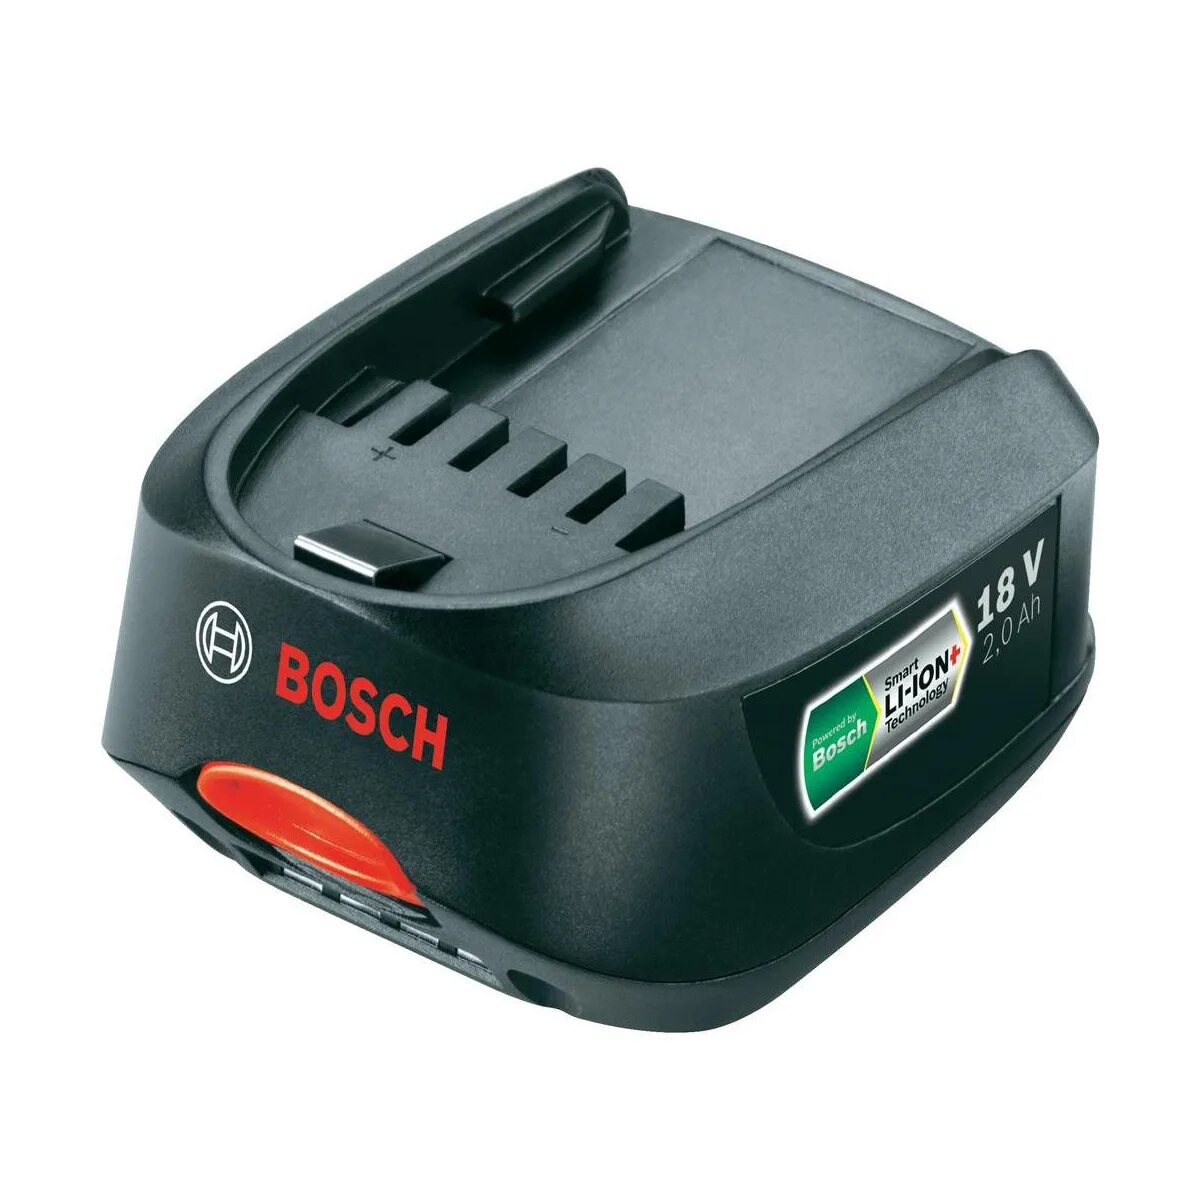 Аккумулятор Bosch 18v 1.5 Ah. Аккумулятор Bosch 18v 2.0Ah li-ion. Аккумулятор Bosch 18v 1.5Ah li-ion. Bosch 18v 2.5Ah аккумулятор.